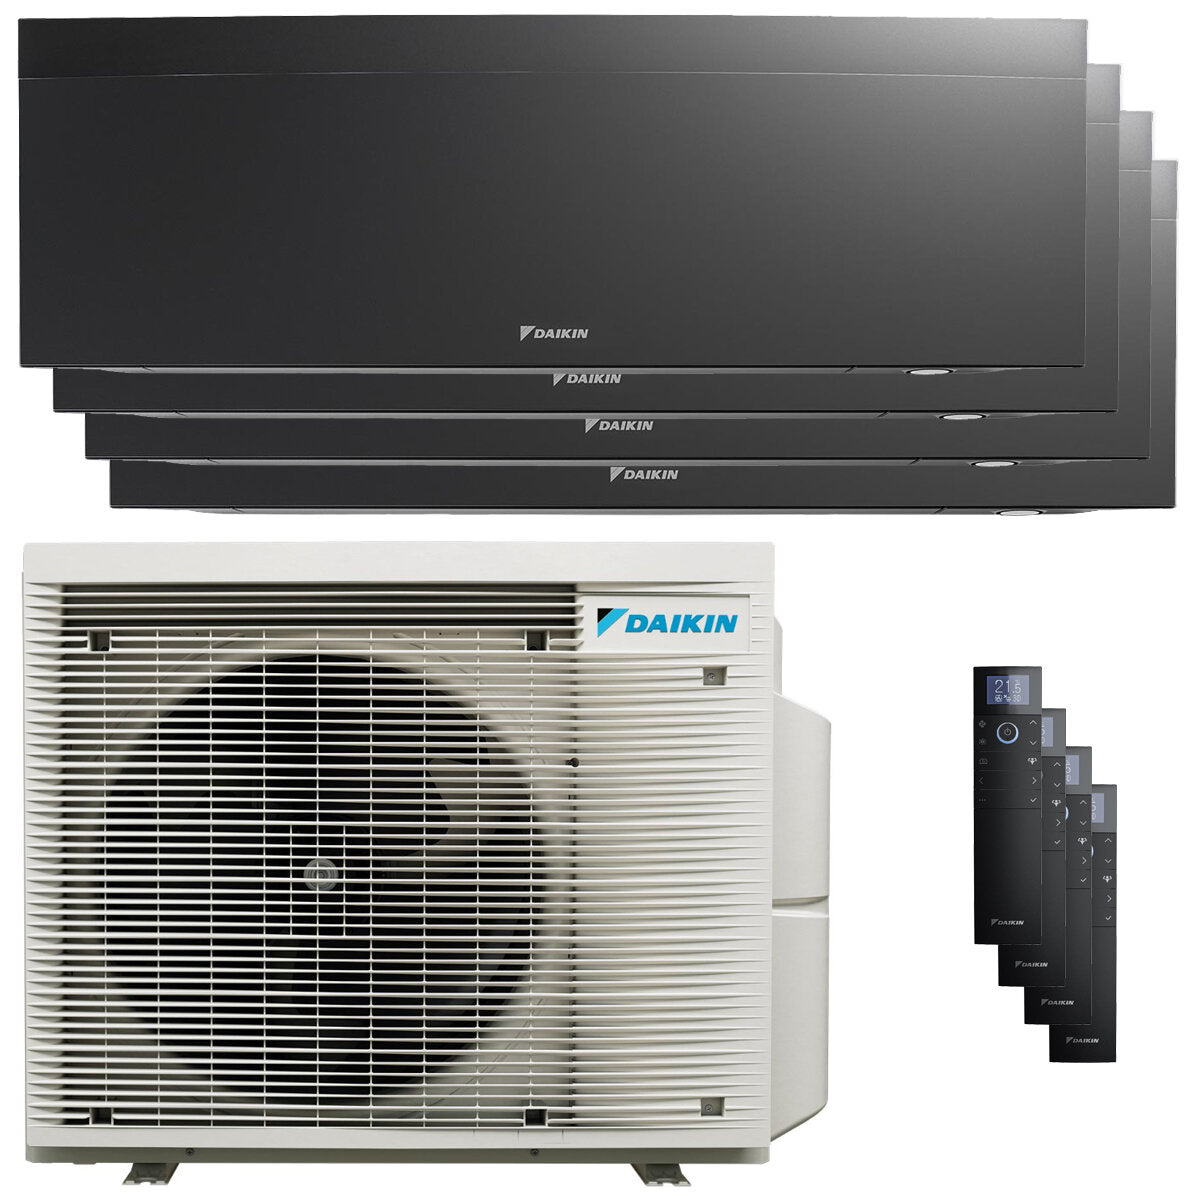 Daikin Emura air conditioner 3 split panels 9000 + 9000 + 12000 + 18000 BTU inverter A + wifi outdoor unit 7.8 kW Black